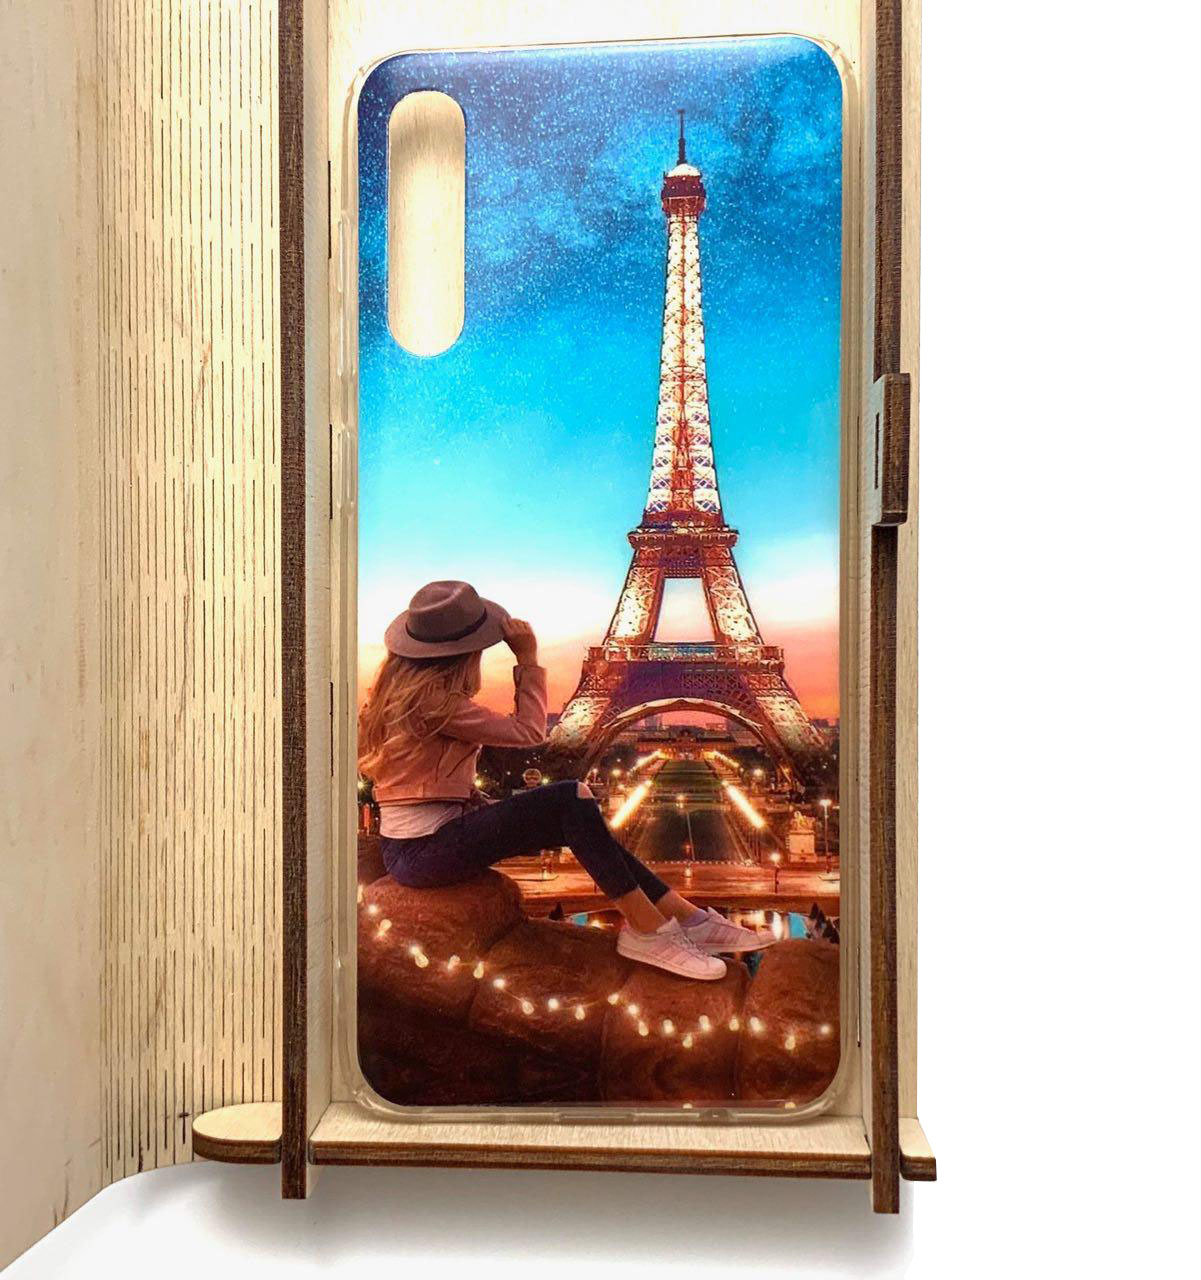 Чехол накладка для SAMSUNG Galaxy A50 (SM-A505), A30s (SM-A307), A50s (SM-A507), силикон, стекло, рисунок Париж Paris.